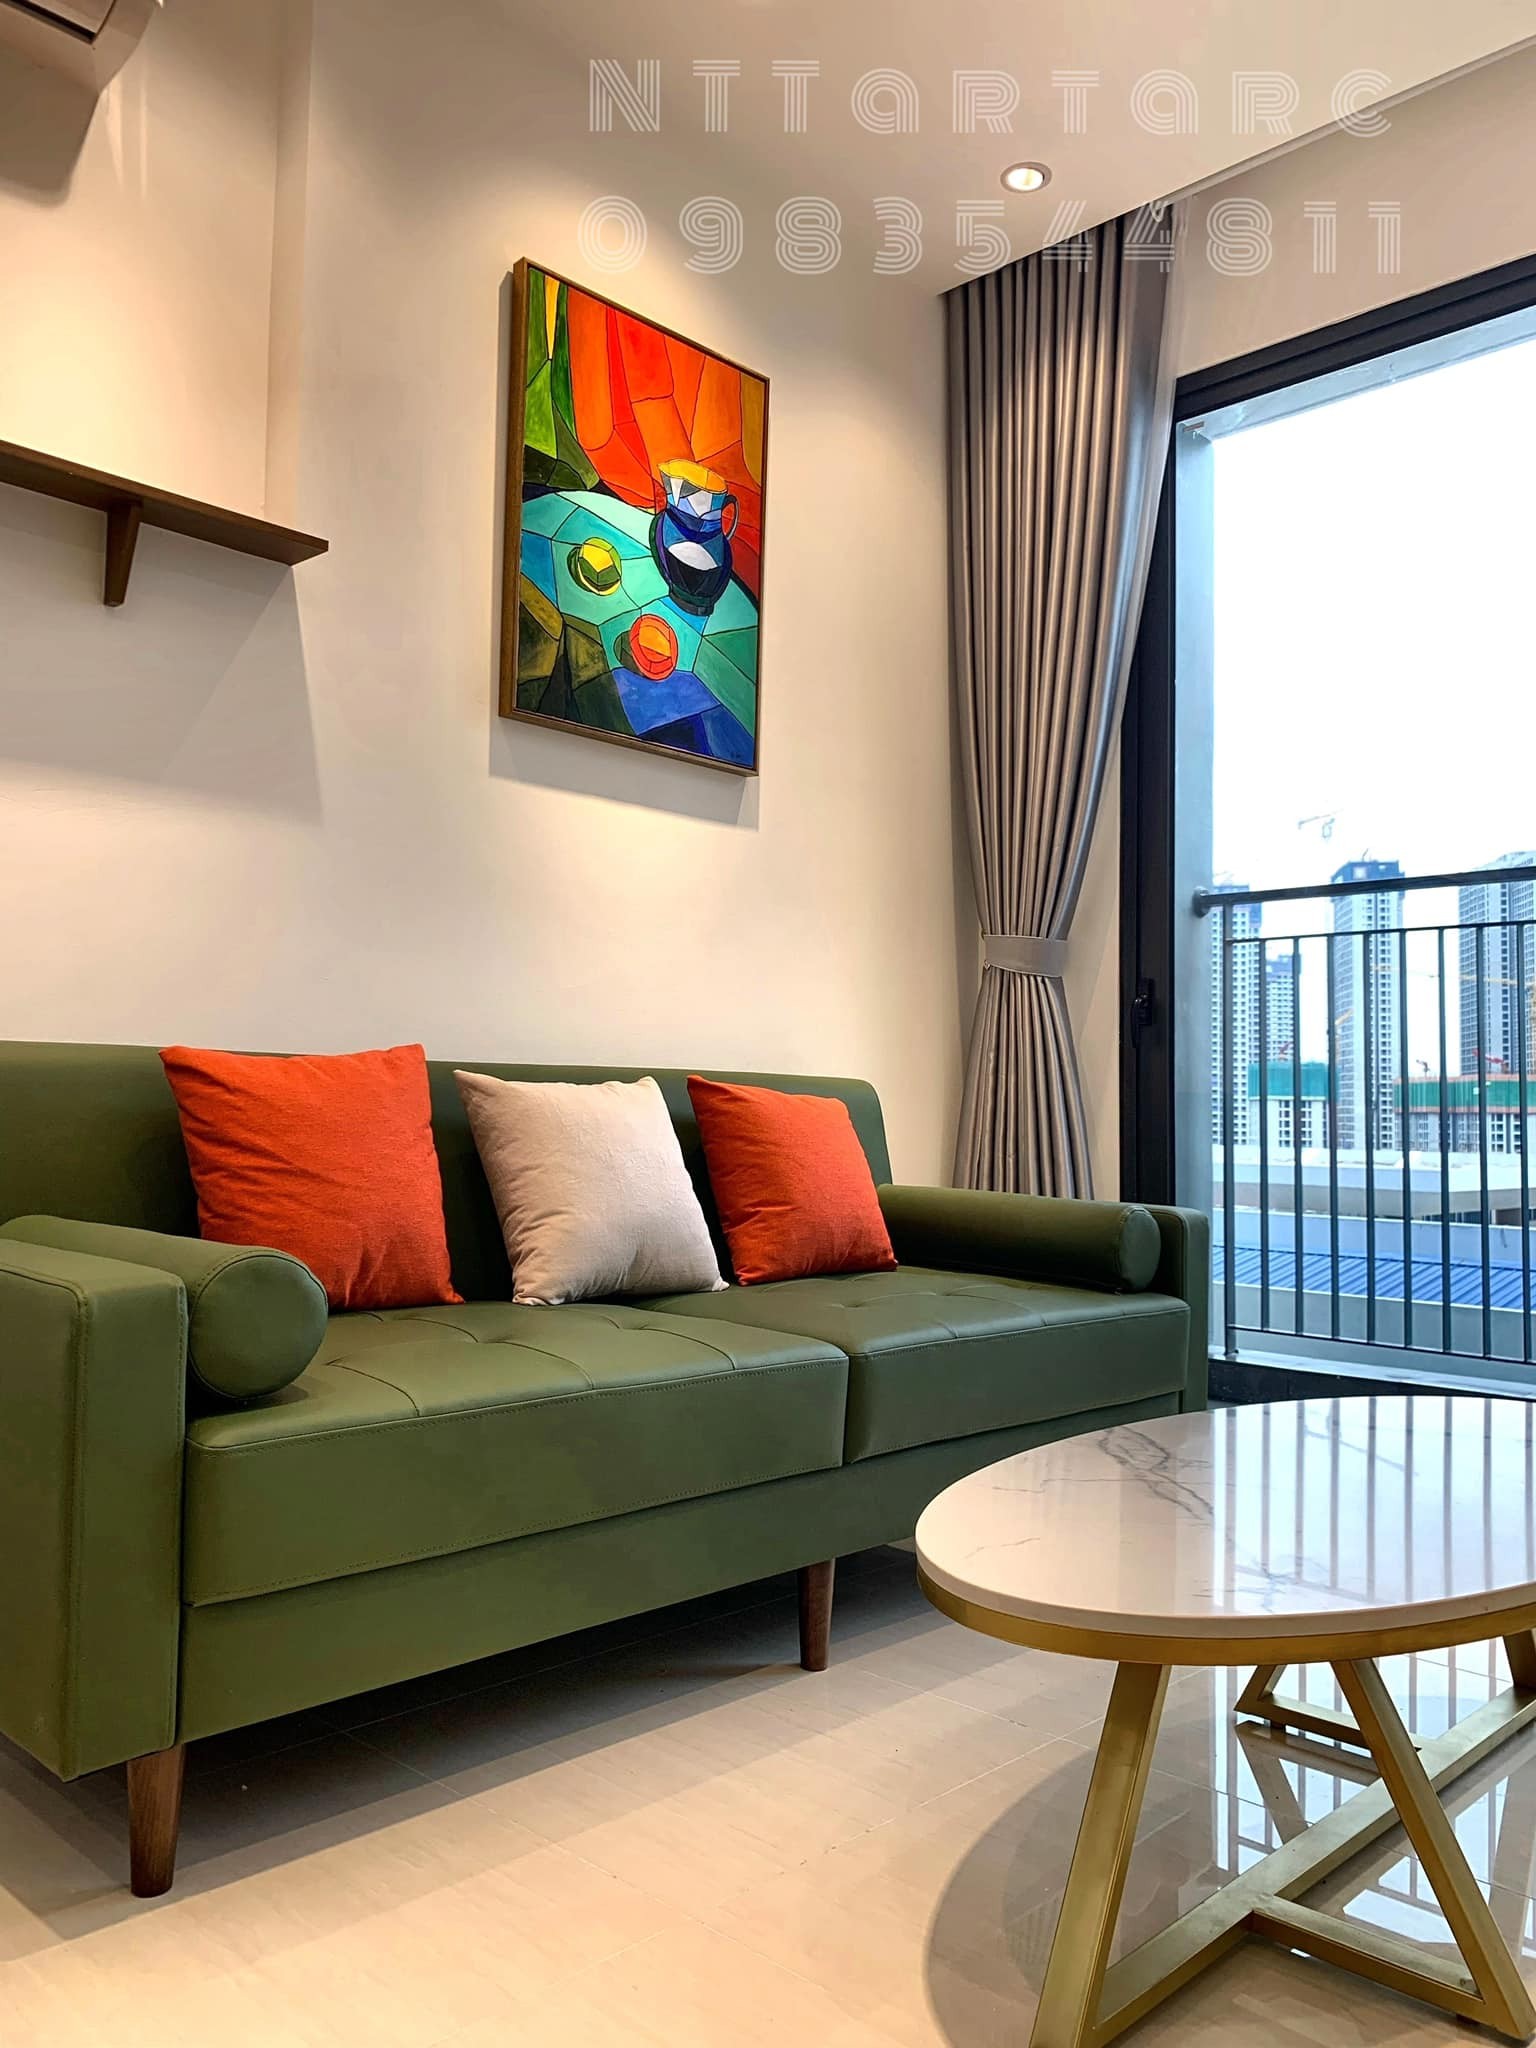 
Bức tranh tạo điểm nhấn cho phòng khách, bộ sofa nhỏ và phù hợp với không gian
